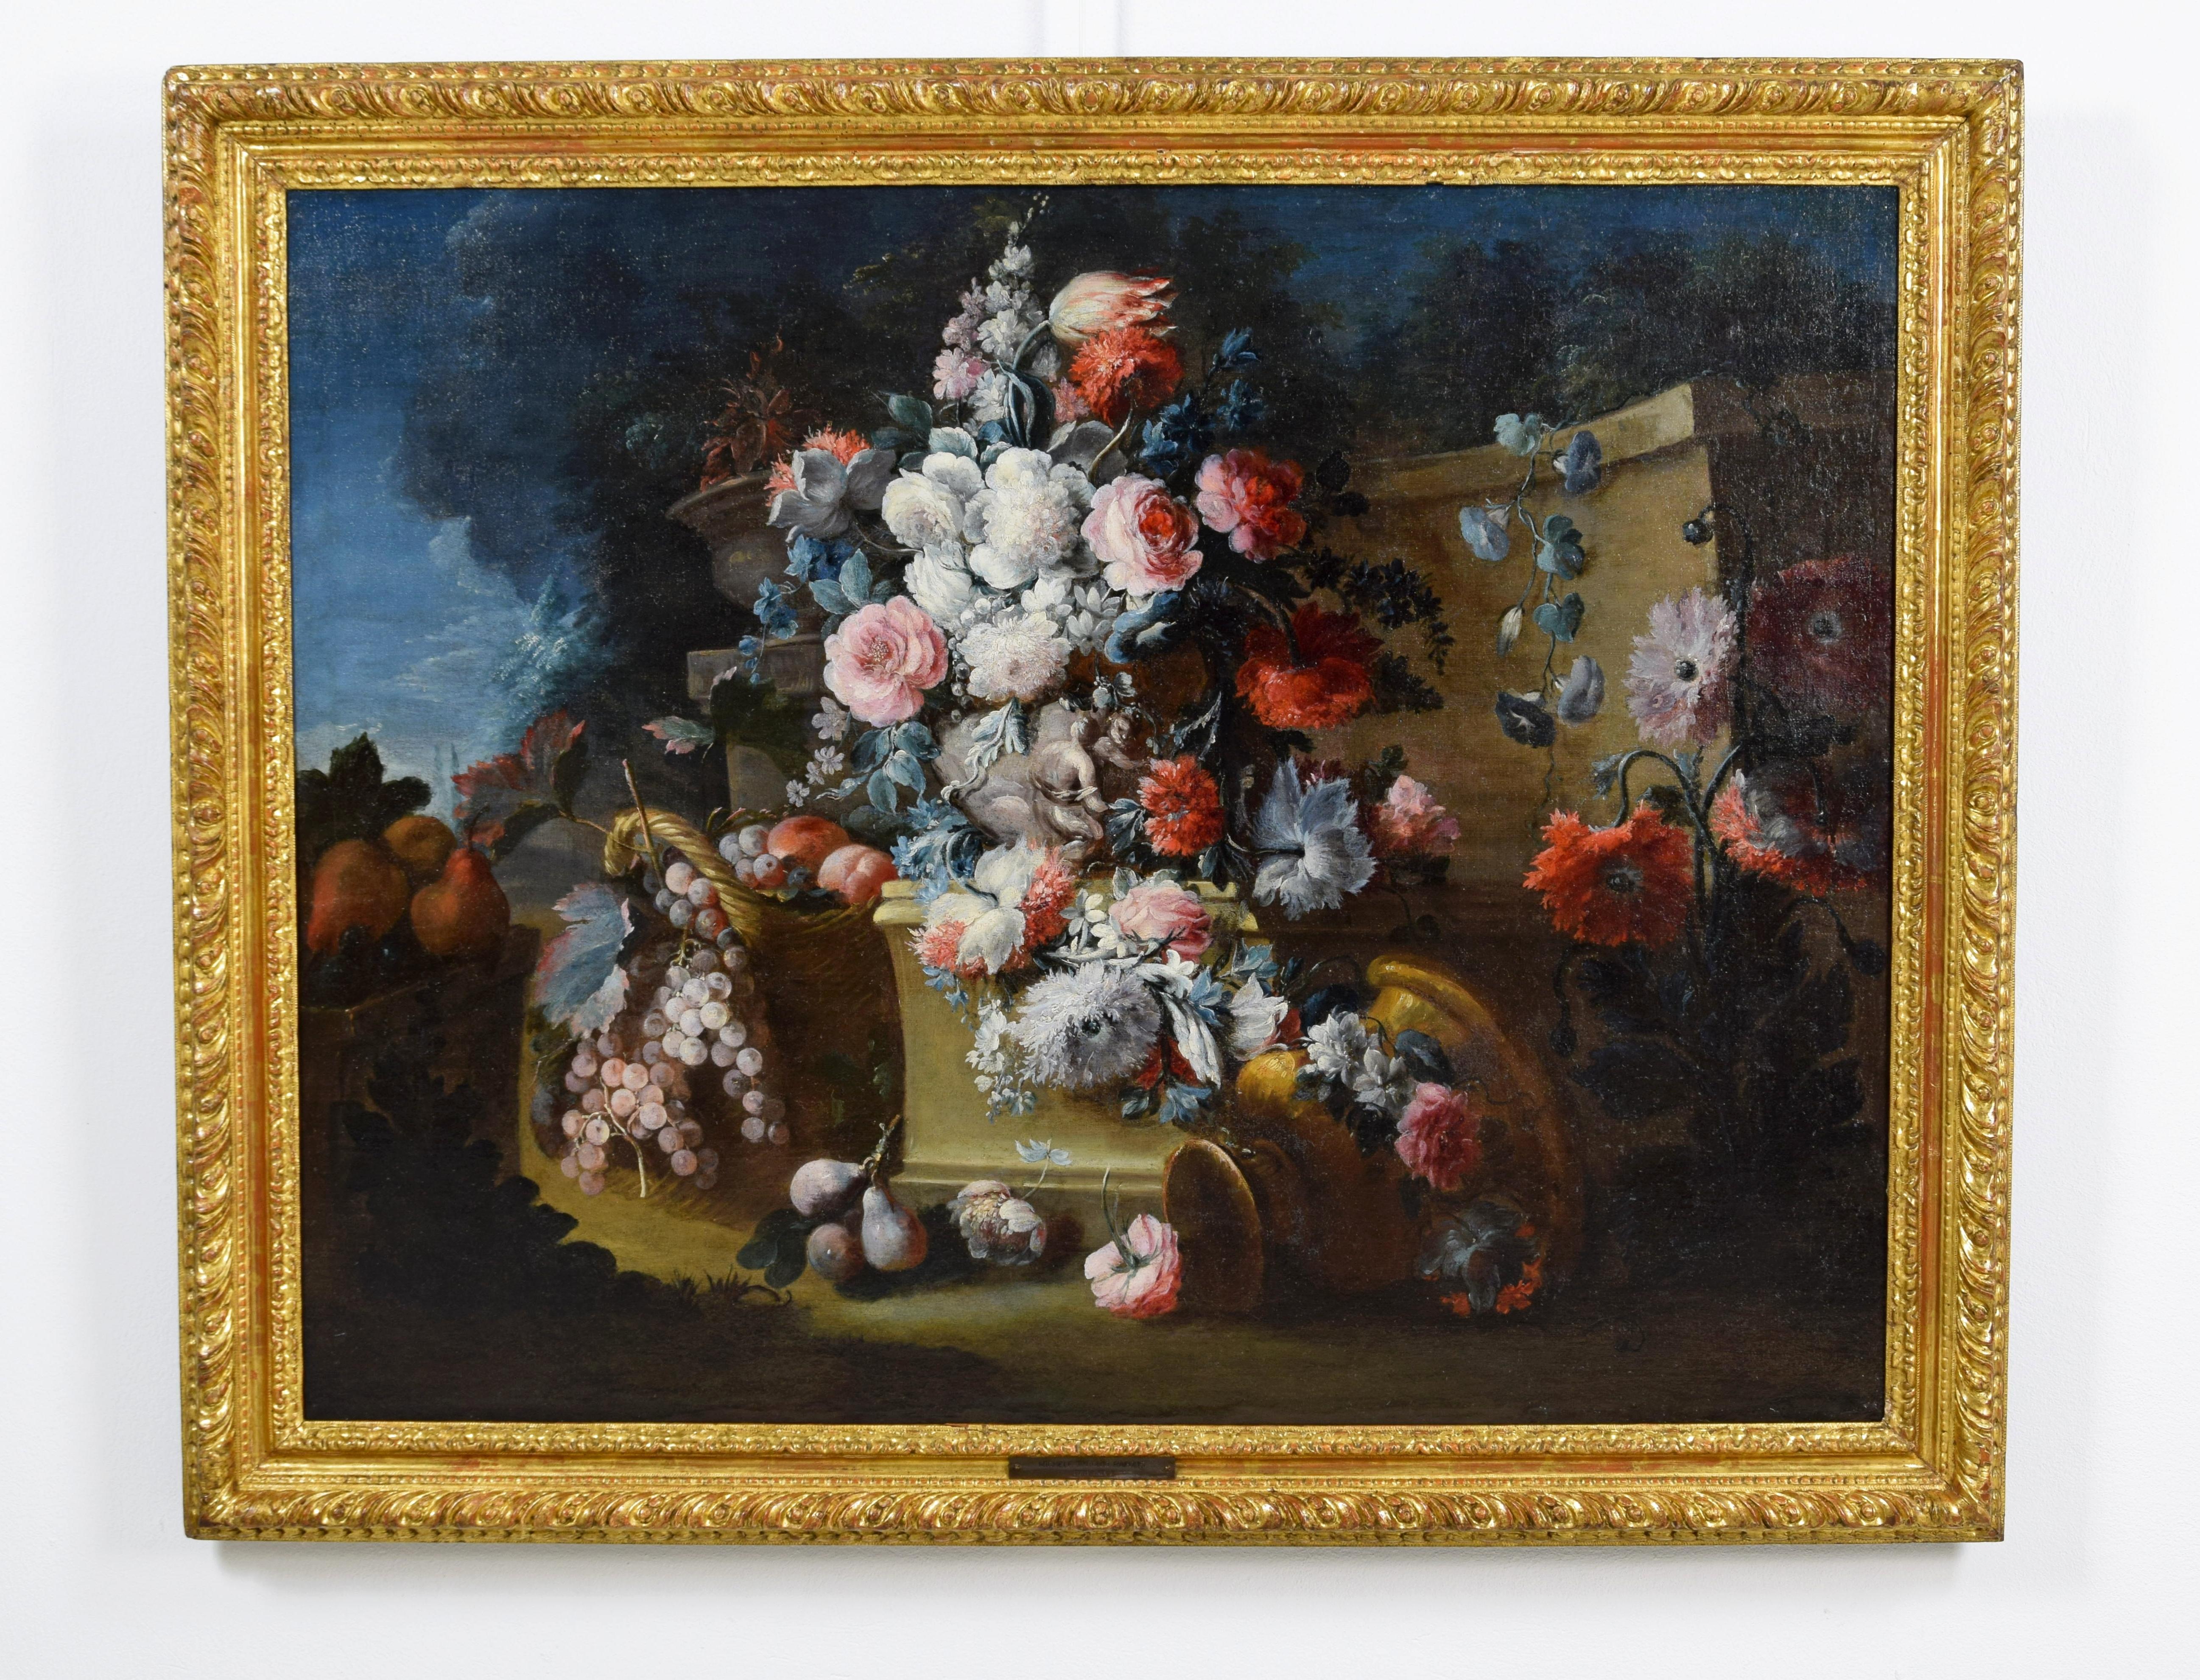 18ème siècle, Nature morte italienne avec des fleurs par Michele Antonio Rapos (Italie 1733-1819)

La toile, de belle facture et en bonnes conditions d'entretien, représente une nature morte avec triomphe de fleurs et de fruits placés dans un